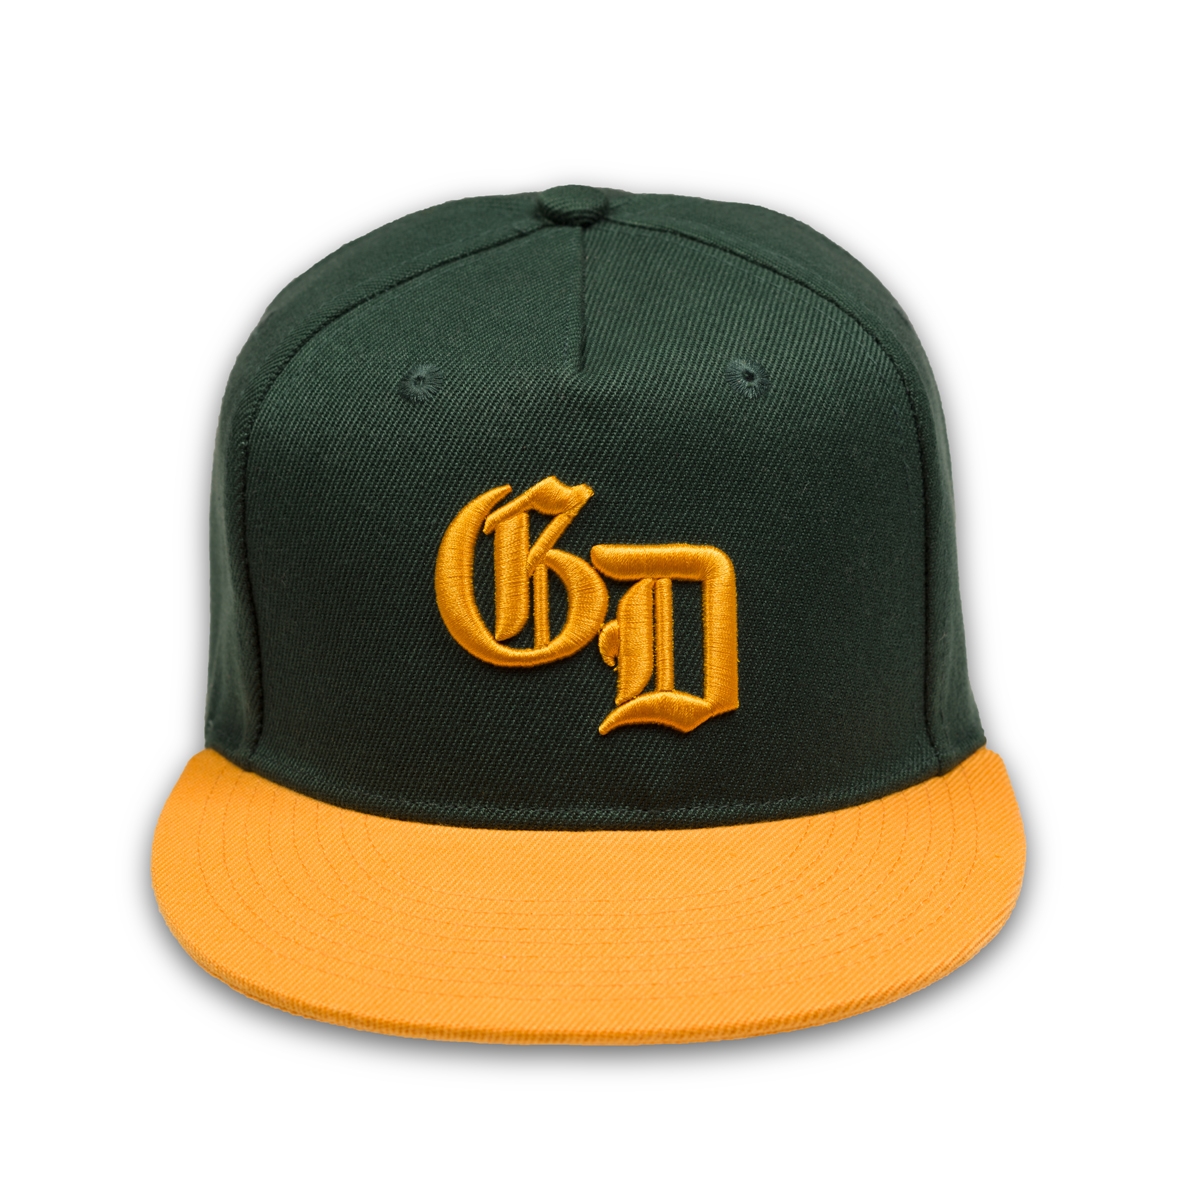 Oakland Athletics '47 Sidenote Trucker Snapback Hat - Green/Gold